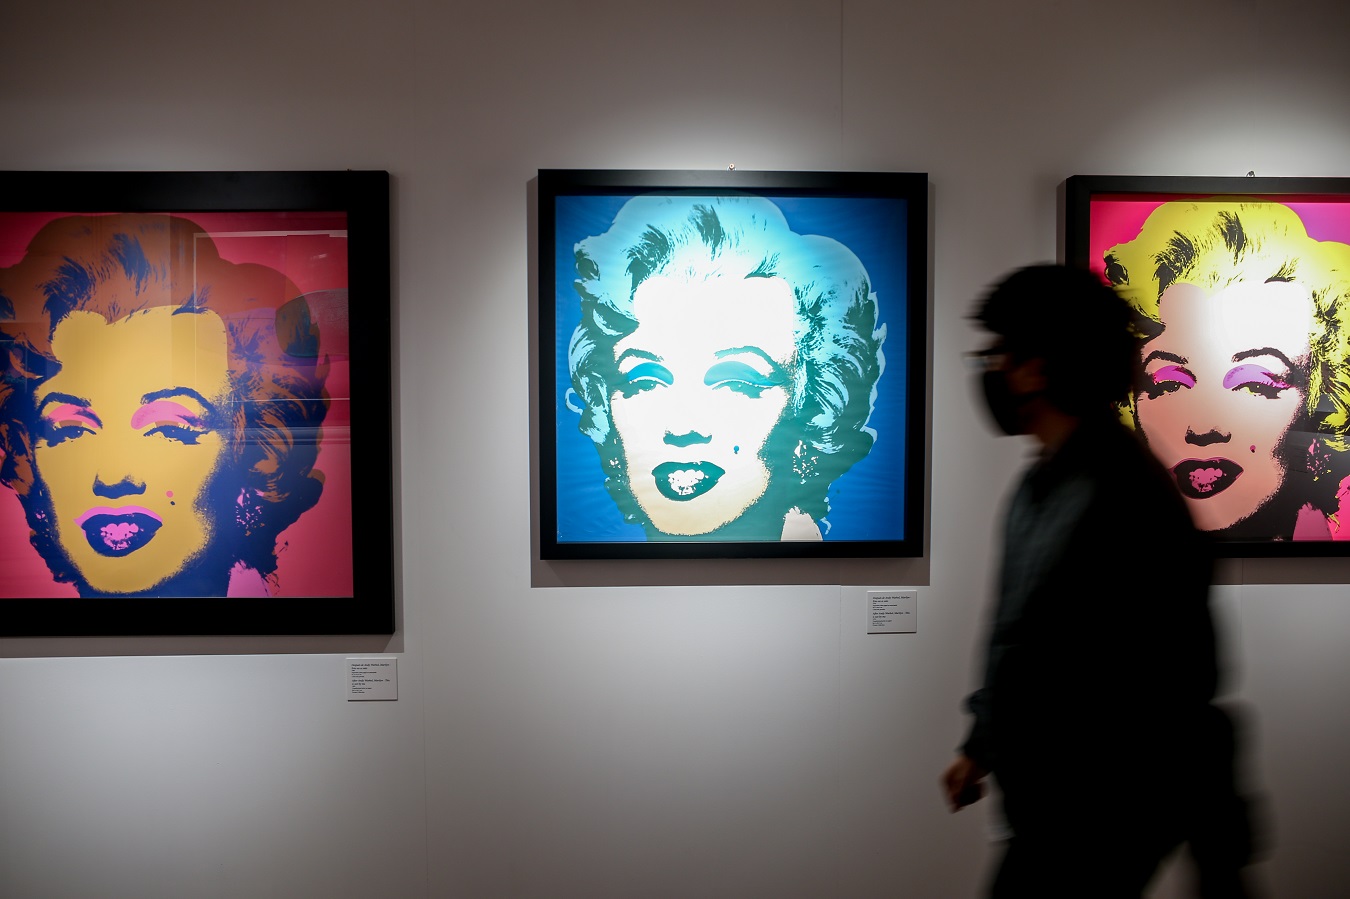 Marilyn Monroe morreu há 60 anos: imagens icónicas da eterna lenda de  Hollywood - SIC Notícias